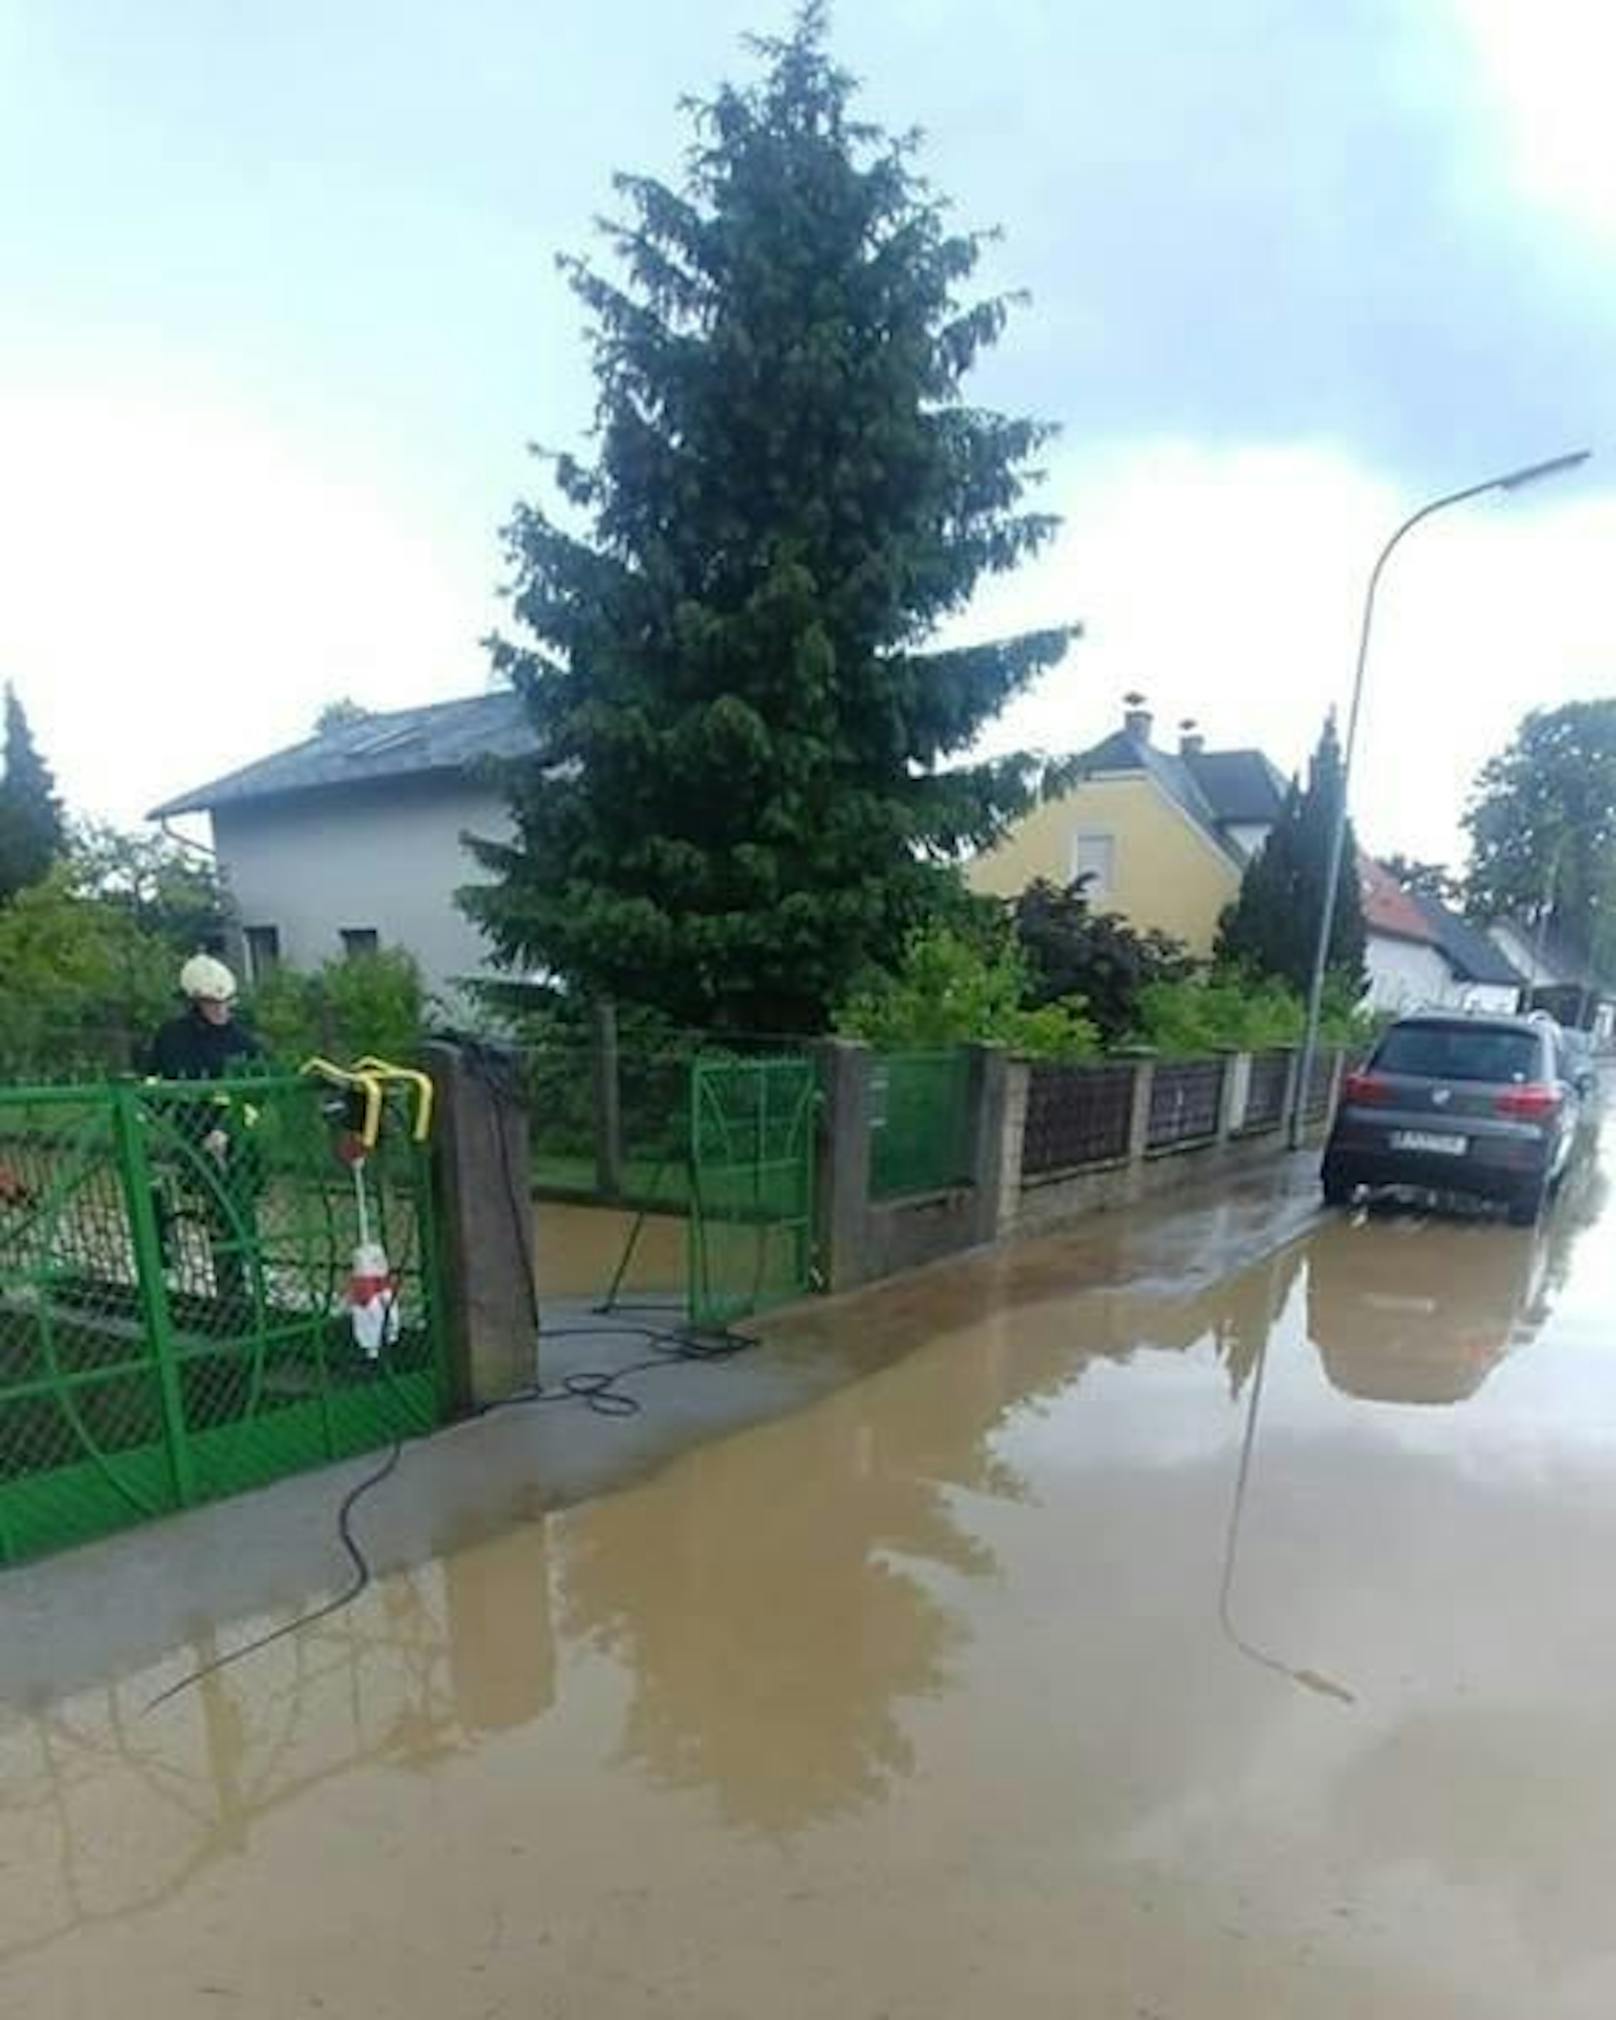 Fotos aus dem Stadtteil Ochsenburg direkt nach dem Regenguss.